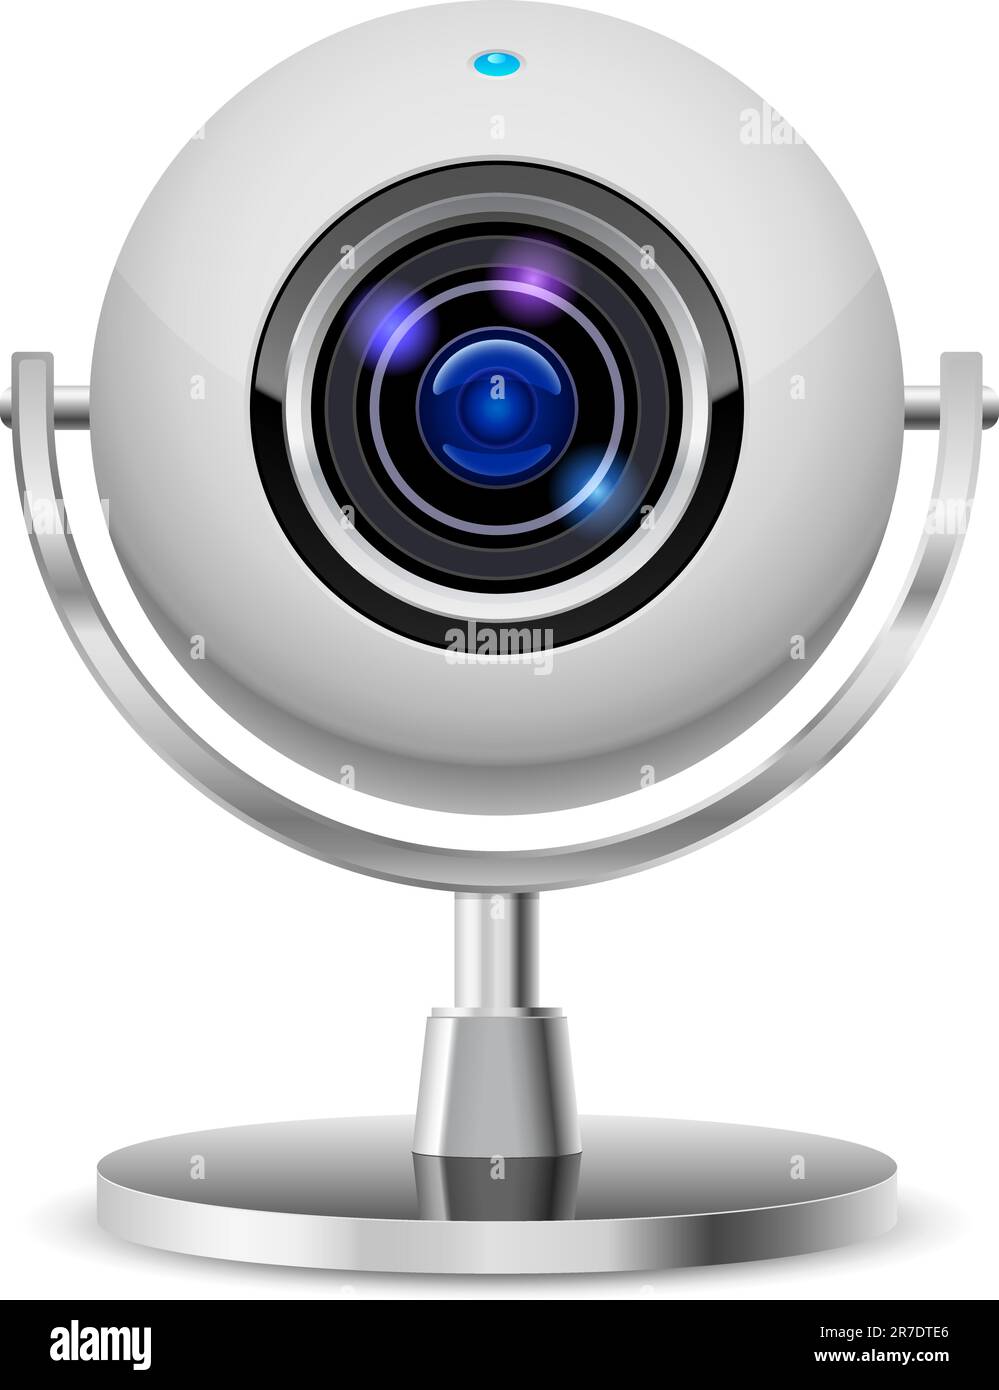 Realistische Computer-Web-Cam. Abbildung auf weißem Hintergrund Stock Vektor